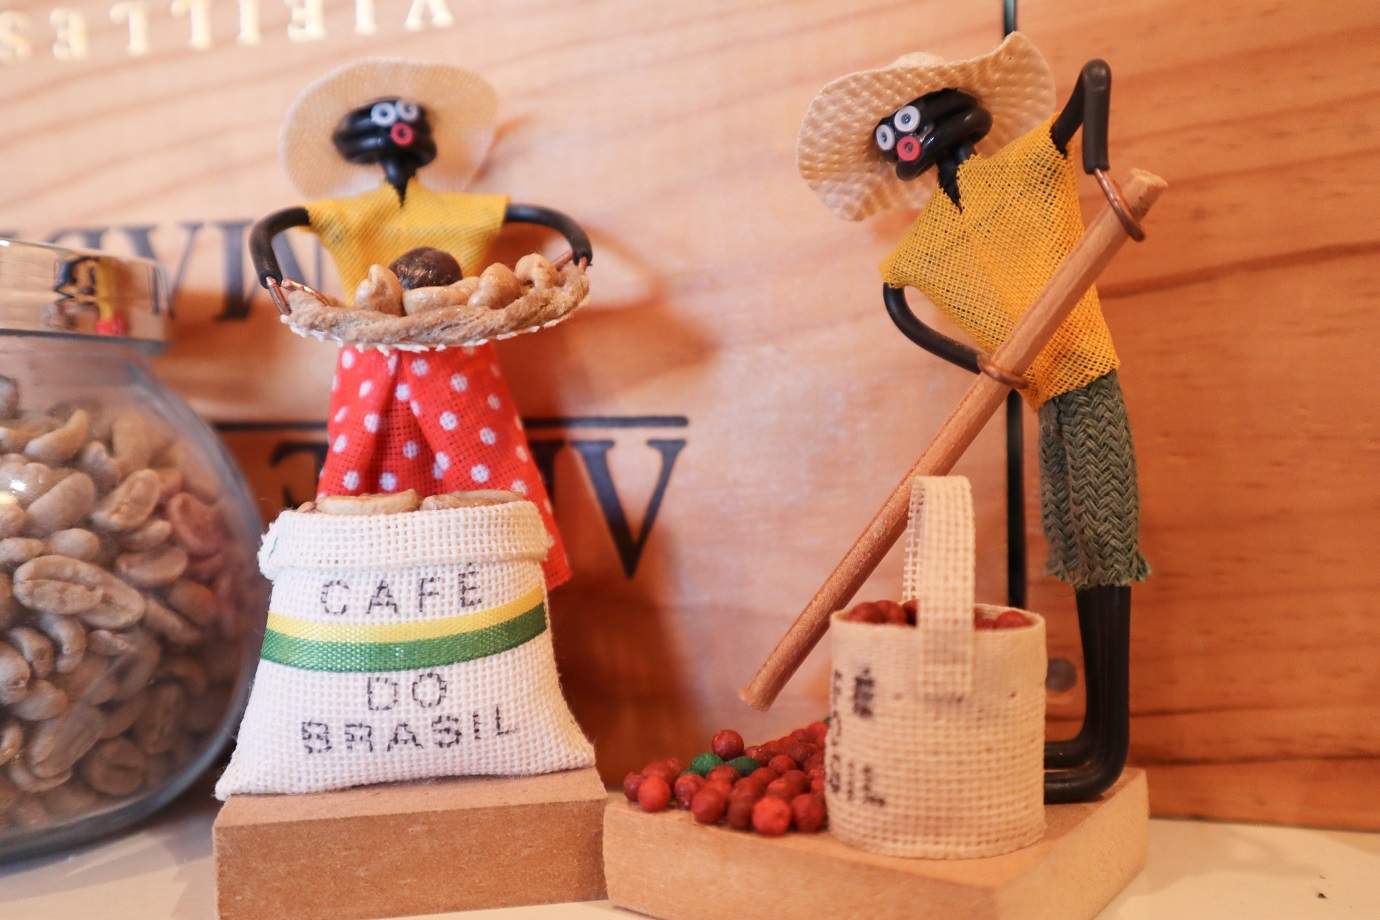 コーヒー豆生産者を模した人形